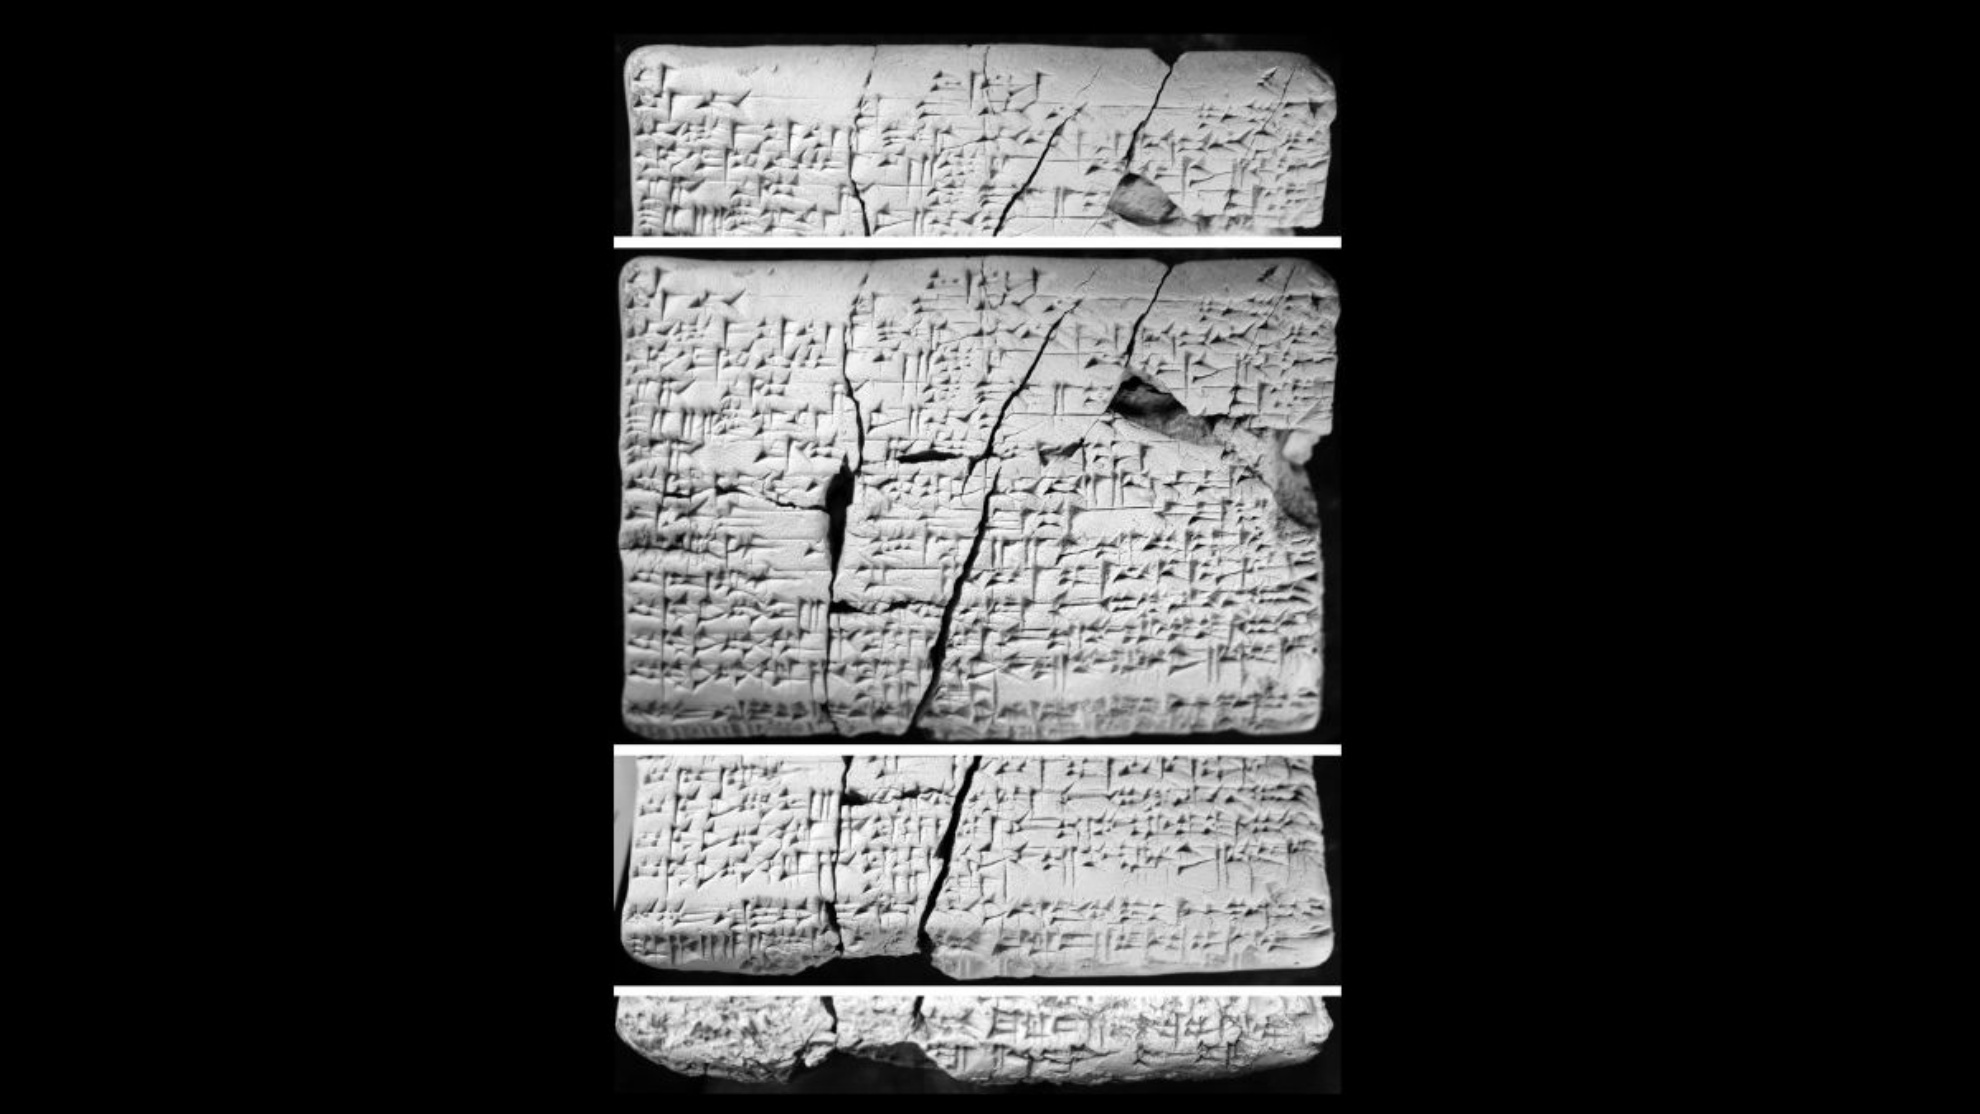 Tablet itu ditemukan di Irak sekitar 30 tahun lalu. Para sarjana mulai mempelajarinya pada tahun 2016 dan menemukan bahwa kata-kata itu mengandung rincian dalam bahasa Akkadia tentang bahasa Amori yang "hilang".